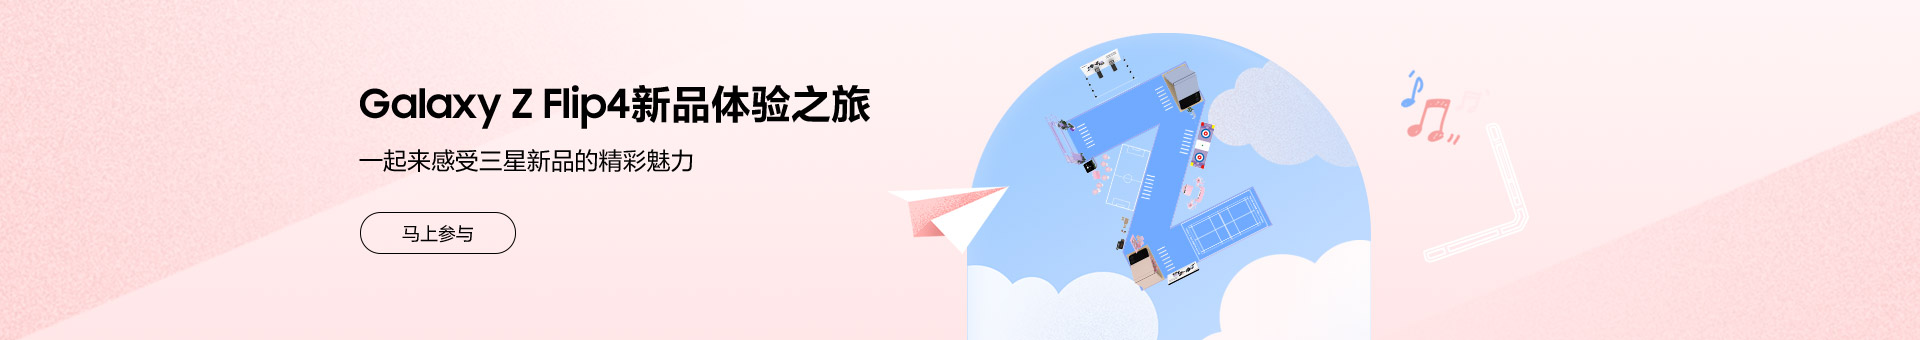 Galaxy Z Flip4新品體驗之旅招募令-北京站